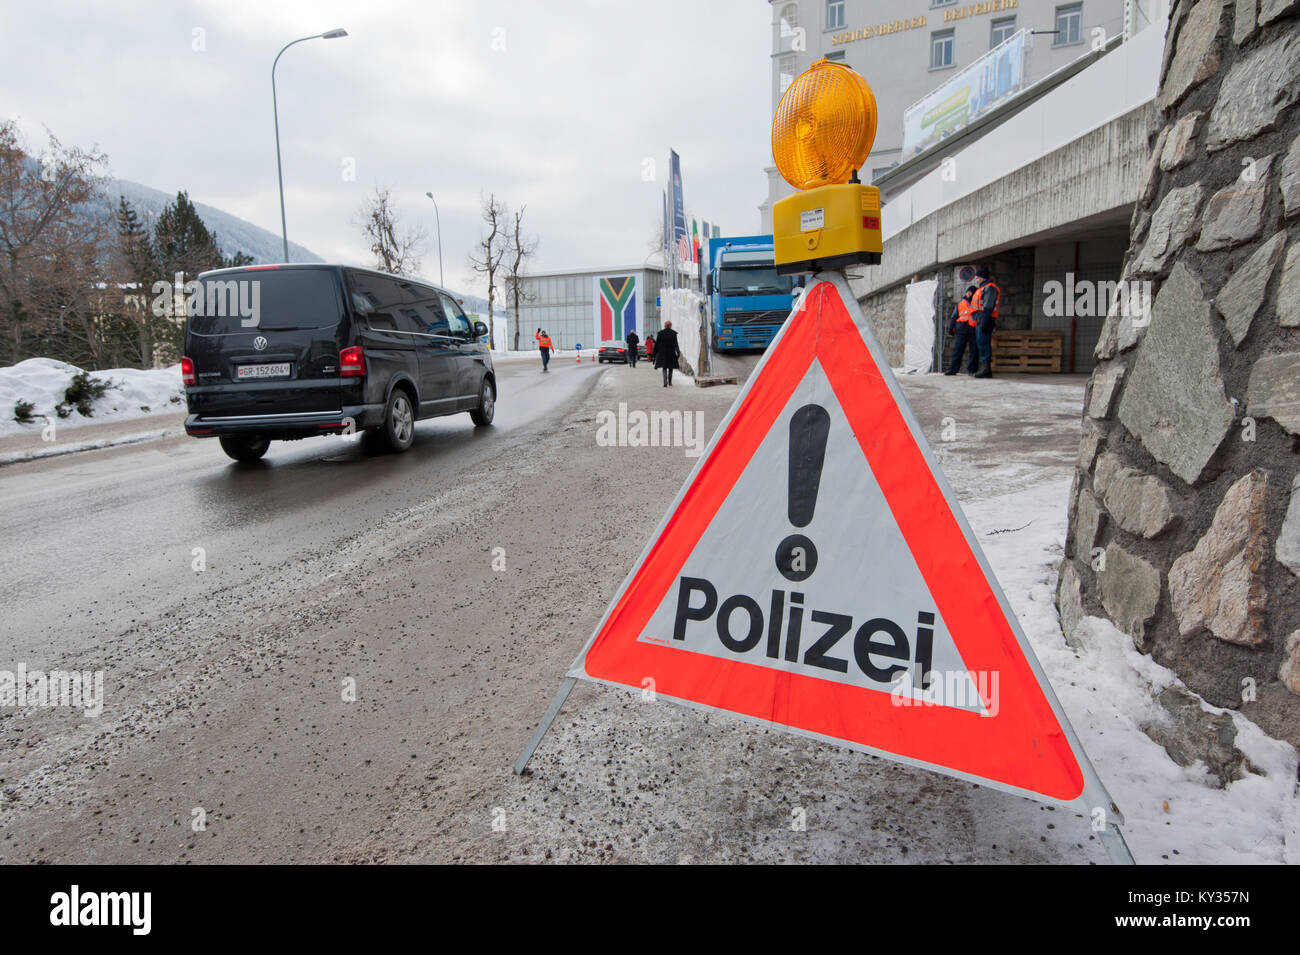 Un contrôle de la police dans le milieu de la petite Suisse village touristique Davos durant le Forum économique mondial (WEF) le 25 janvier 2013. Chaque année, des mesures de sécurité à prendre pour le WEF tourner la petite Suisse village alpin de Davos en une forteresse. Banque D'Images